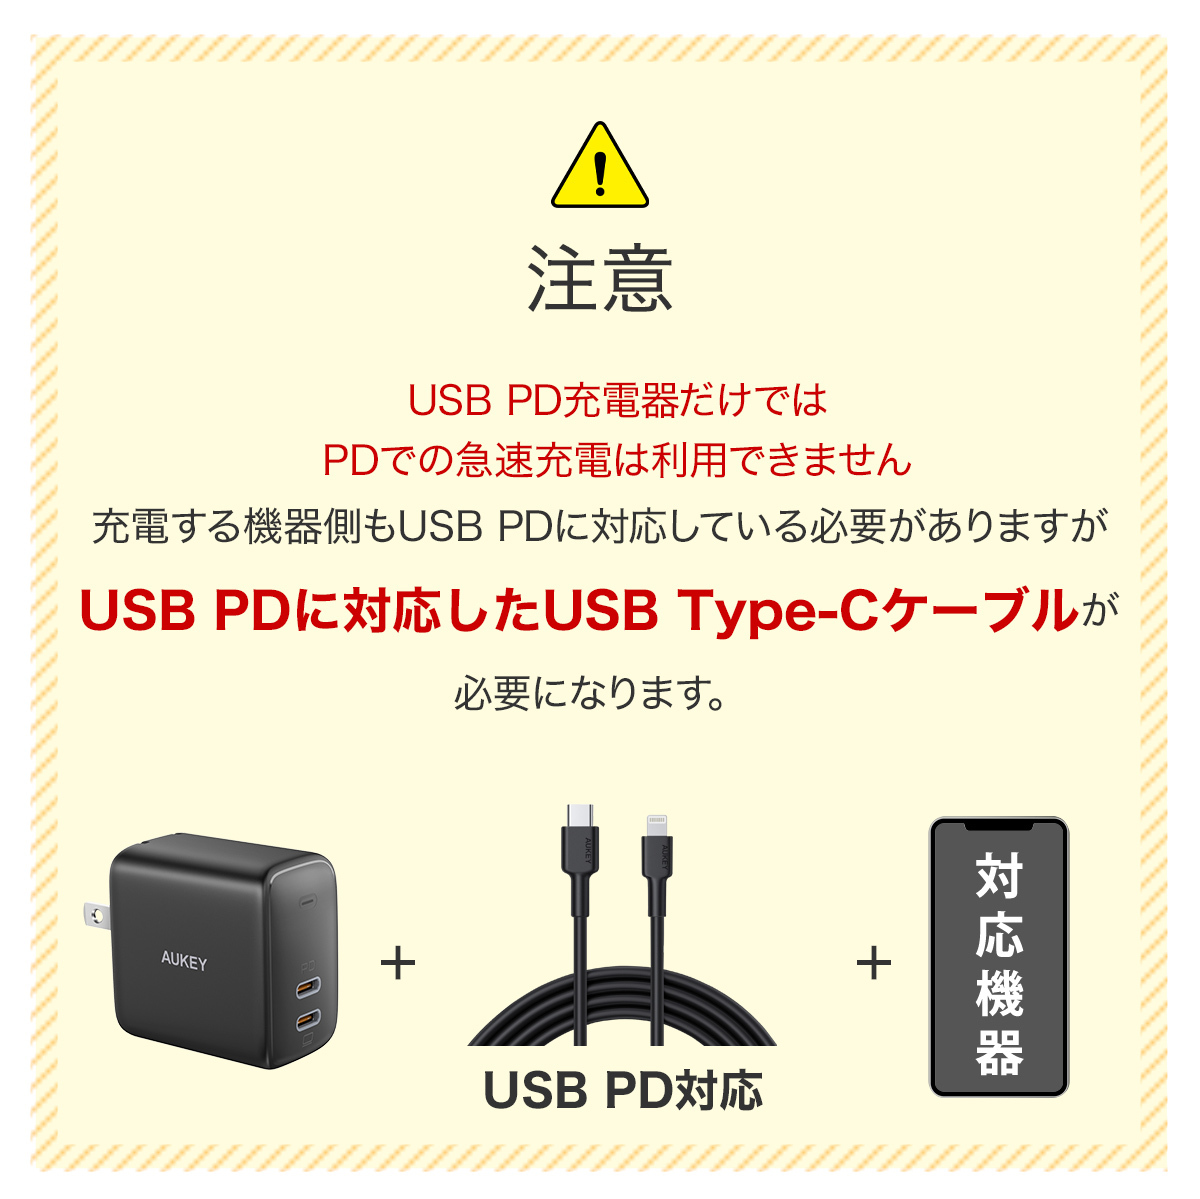 （注意）USB PD充電器だけではPDでの急速充電は利用できません。USB PDに対応したUSB Type-Cケーブルが必要になります。